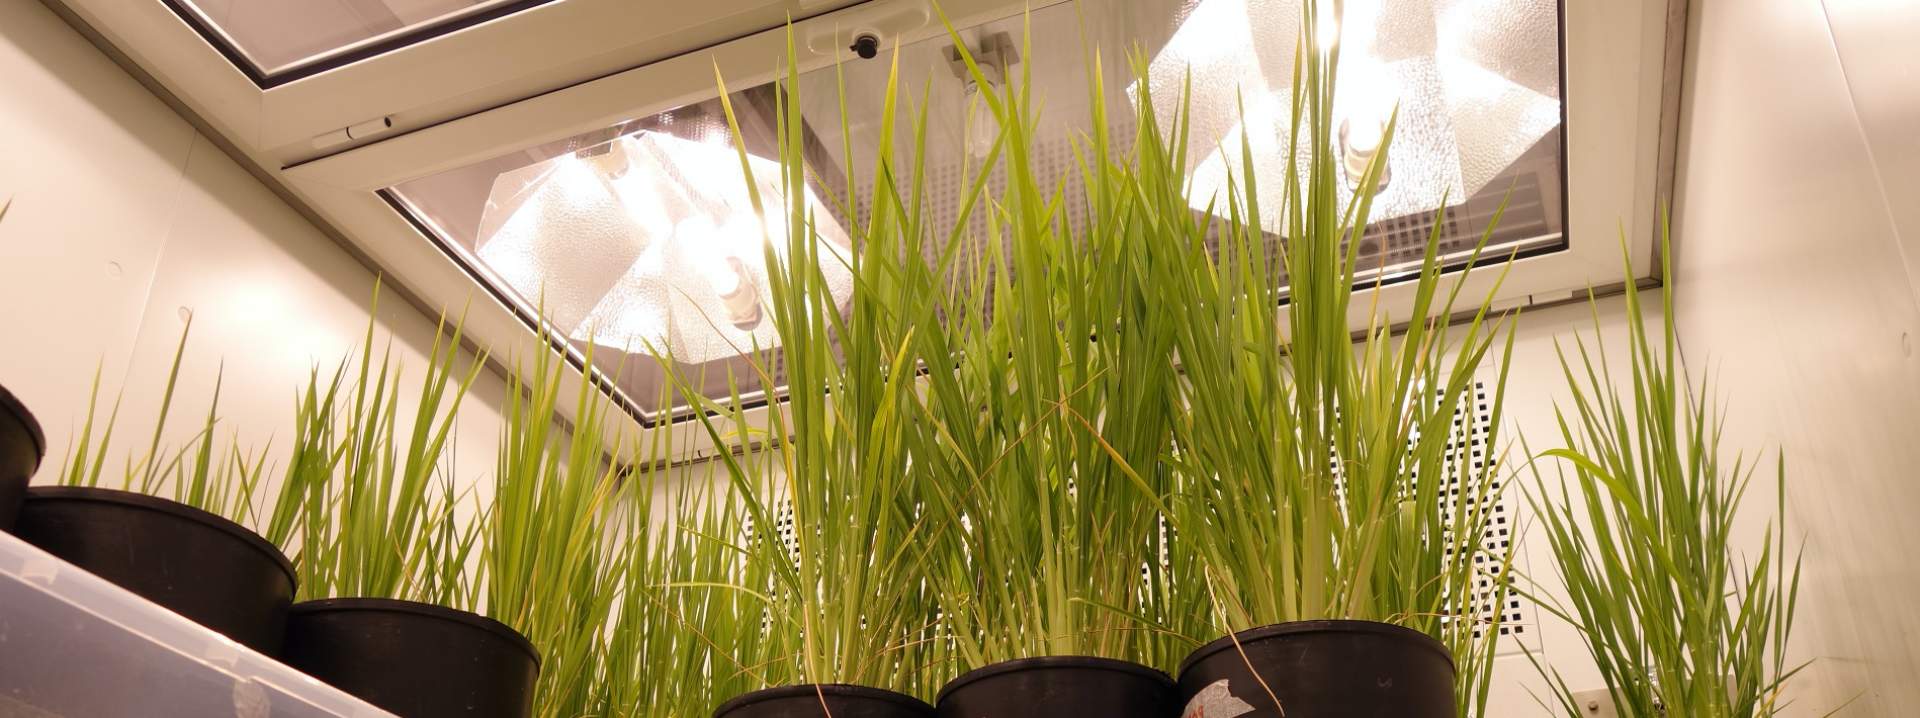 ตู้ควบคุมการเจริญเติบโตเพาะเลี้ยงพืช และชีวภาพ (BIO PLANT RESEARCH) ยี่ห้อ ARALAB รุ่น FITO CLIMA HP “WALK-IN” (SIT166)